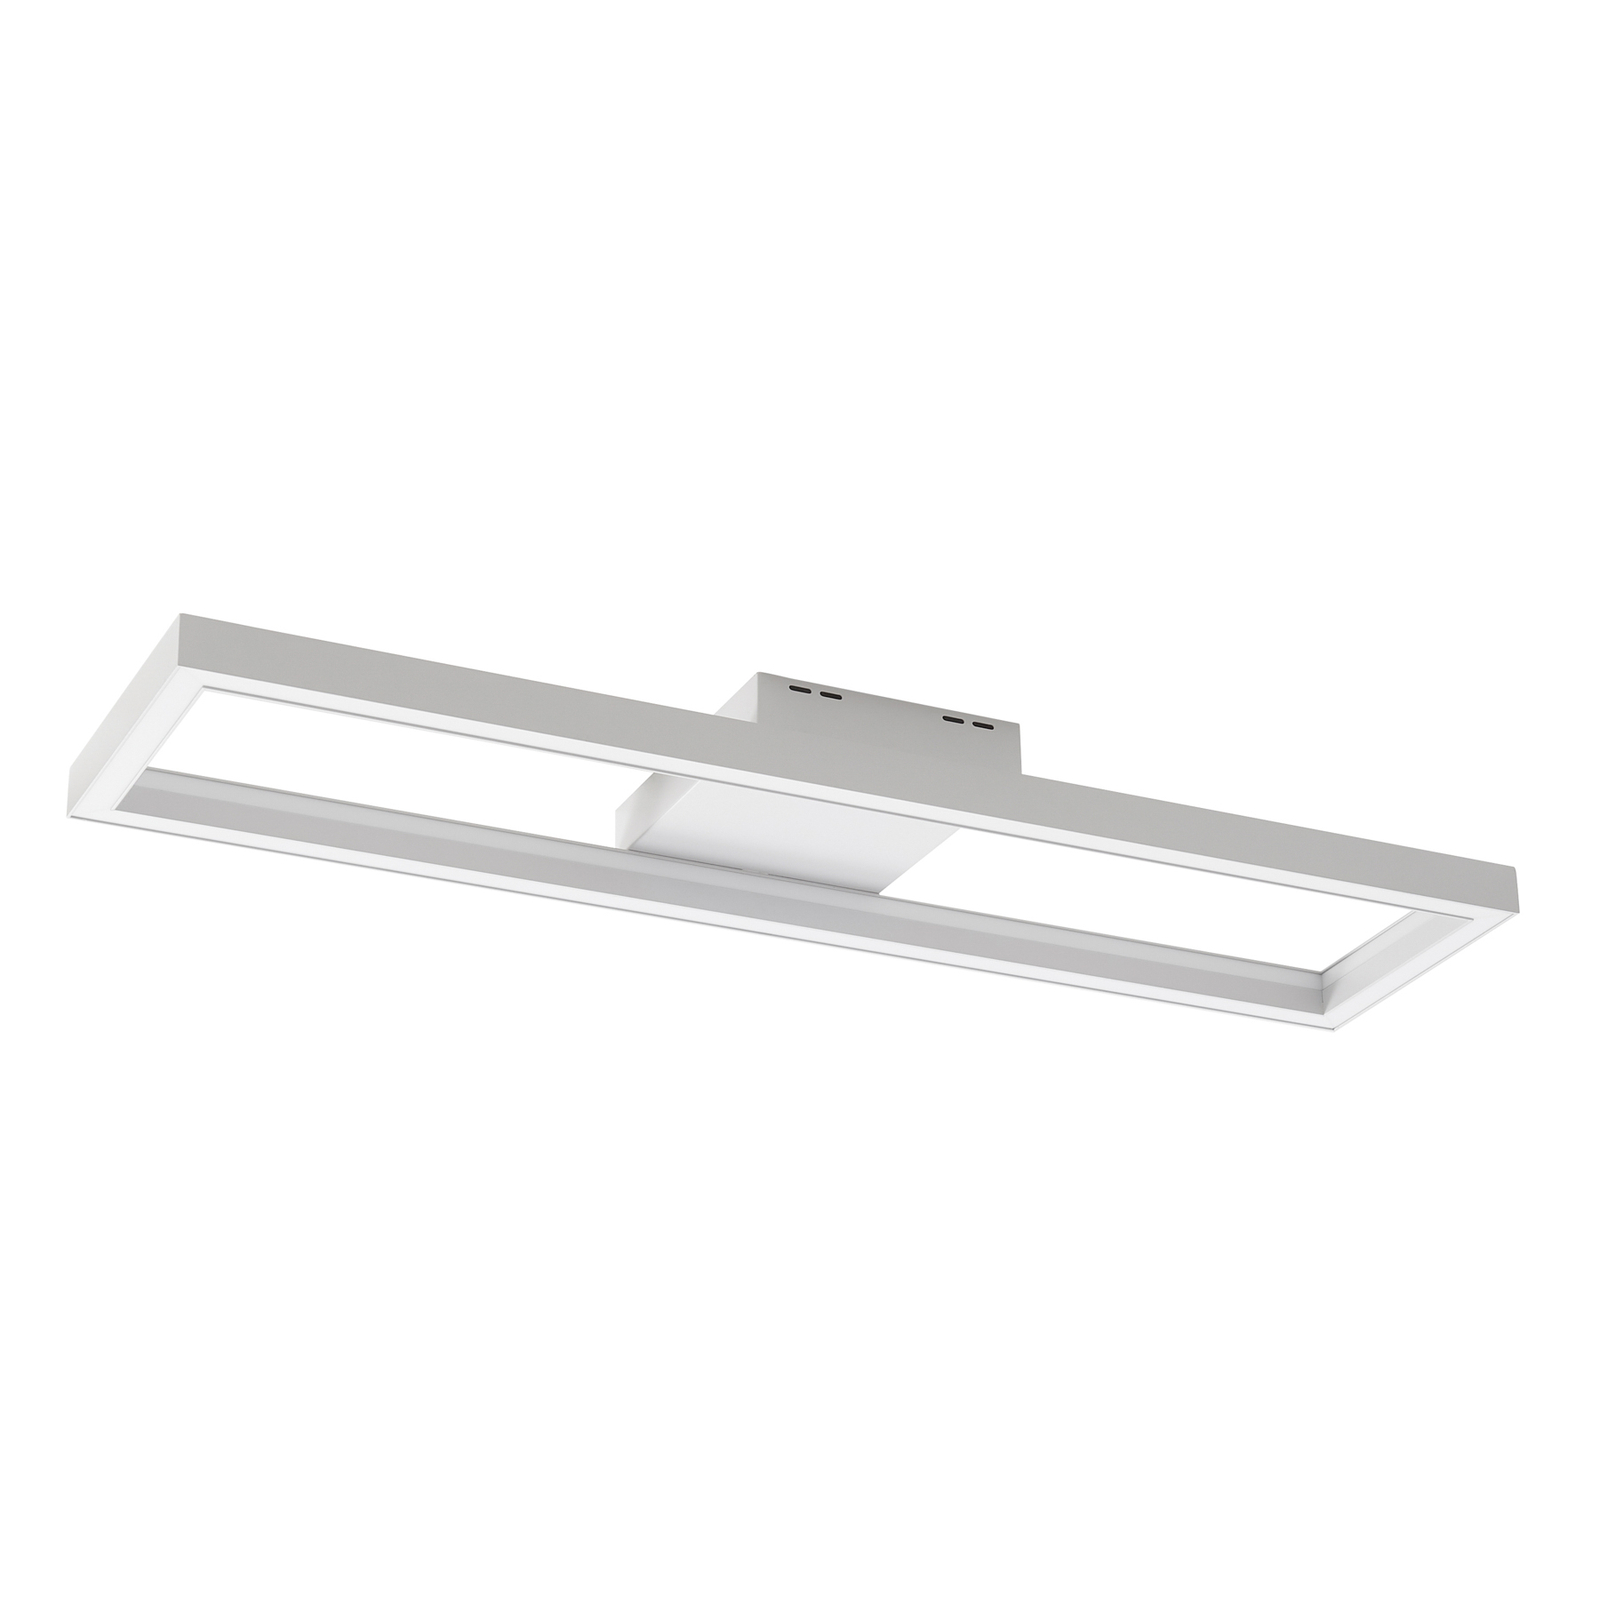 Lucande Smart LED-Deckenleuchte Tjado, 100 cm, weiß, RGBW